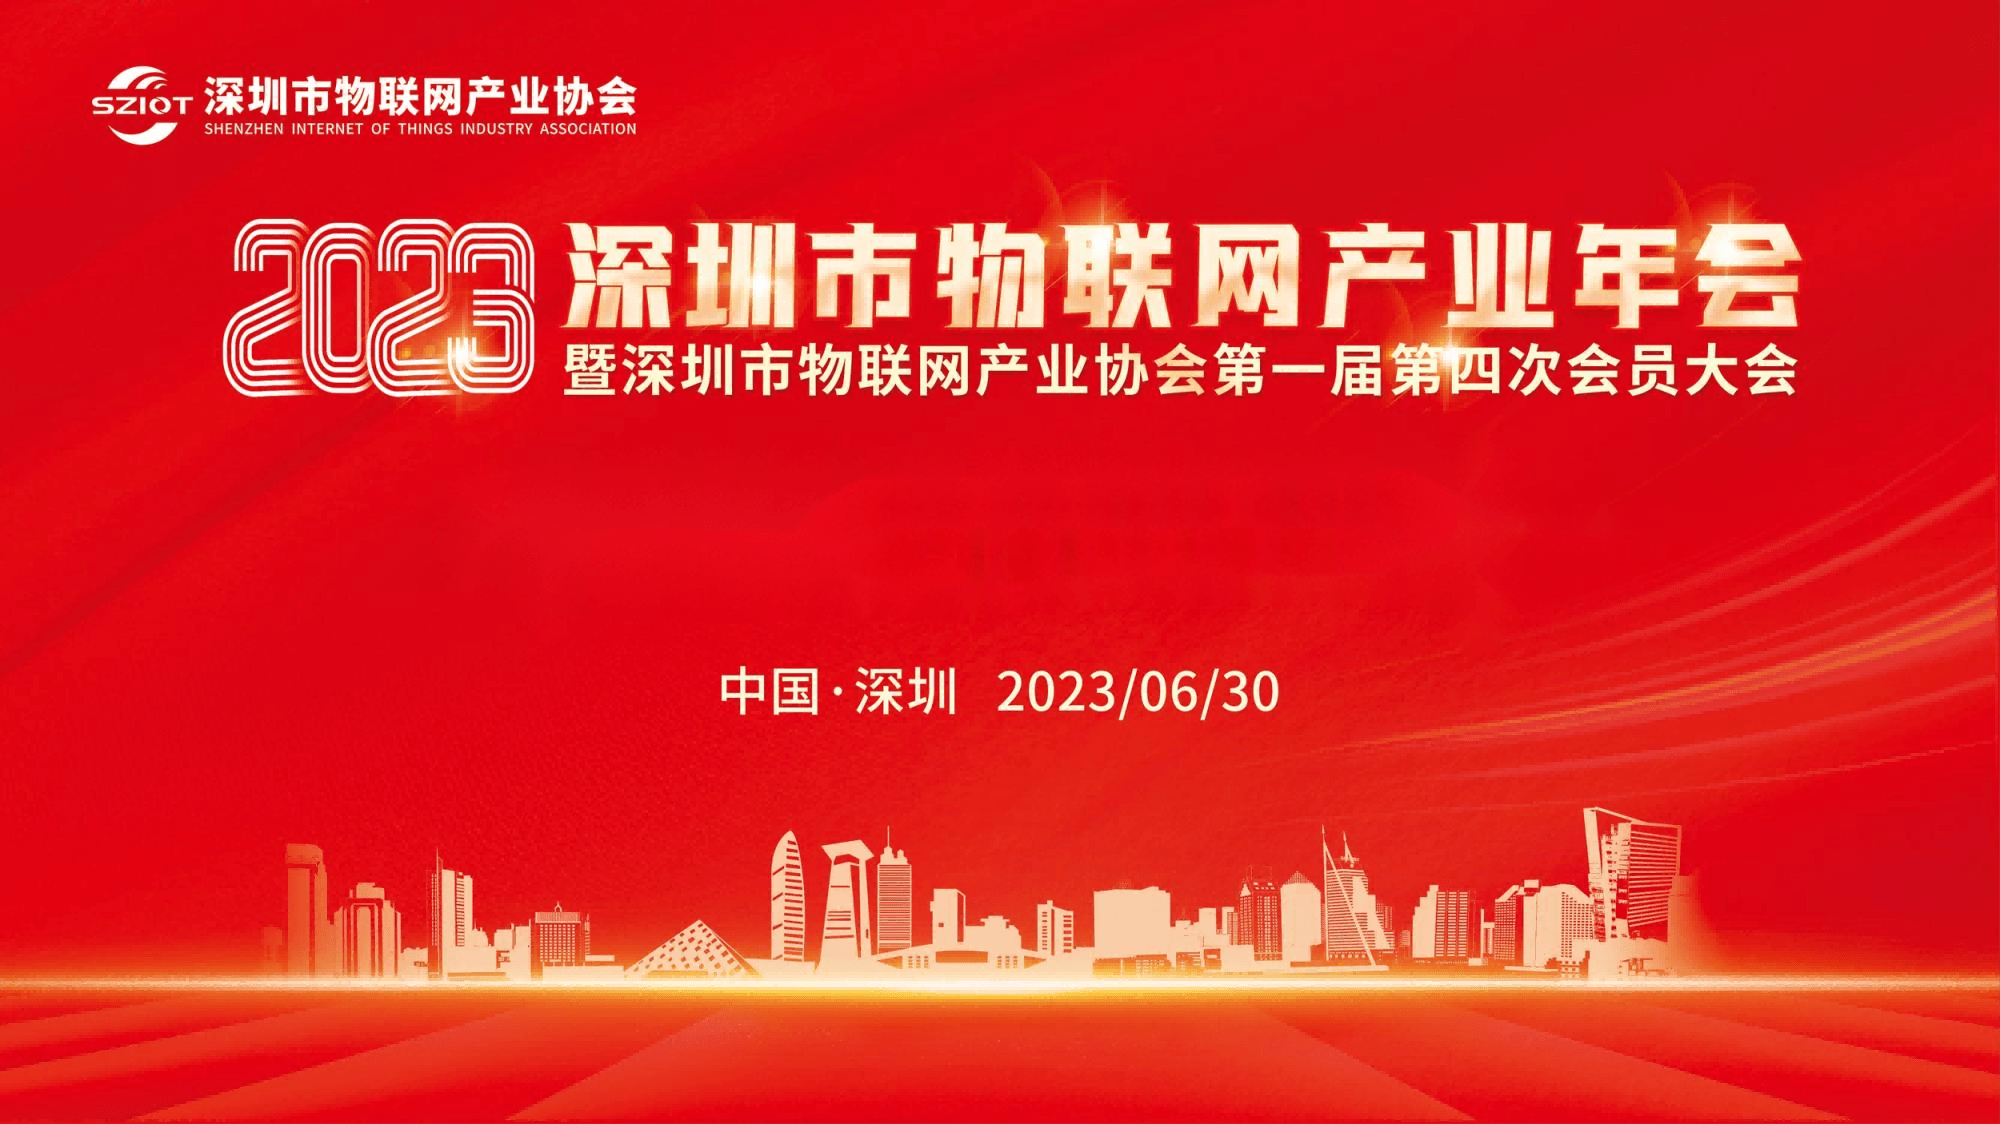 2023深圳市物聯網產業年會暨深圳市物聯網產業協會第一屆第四次會員大會